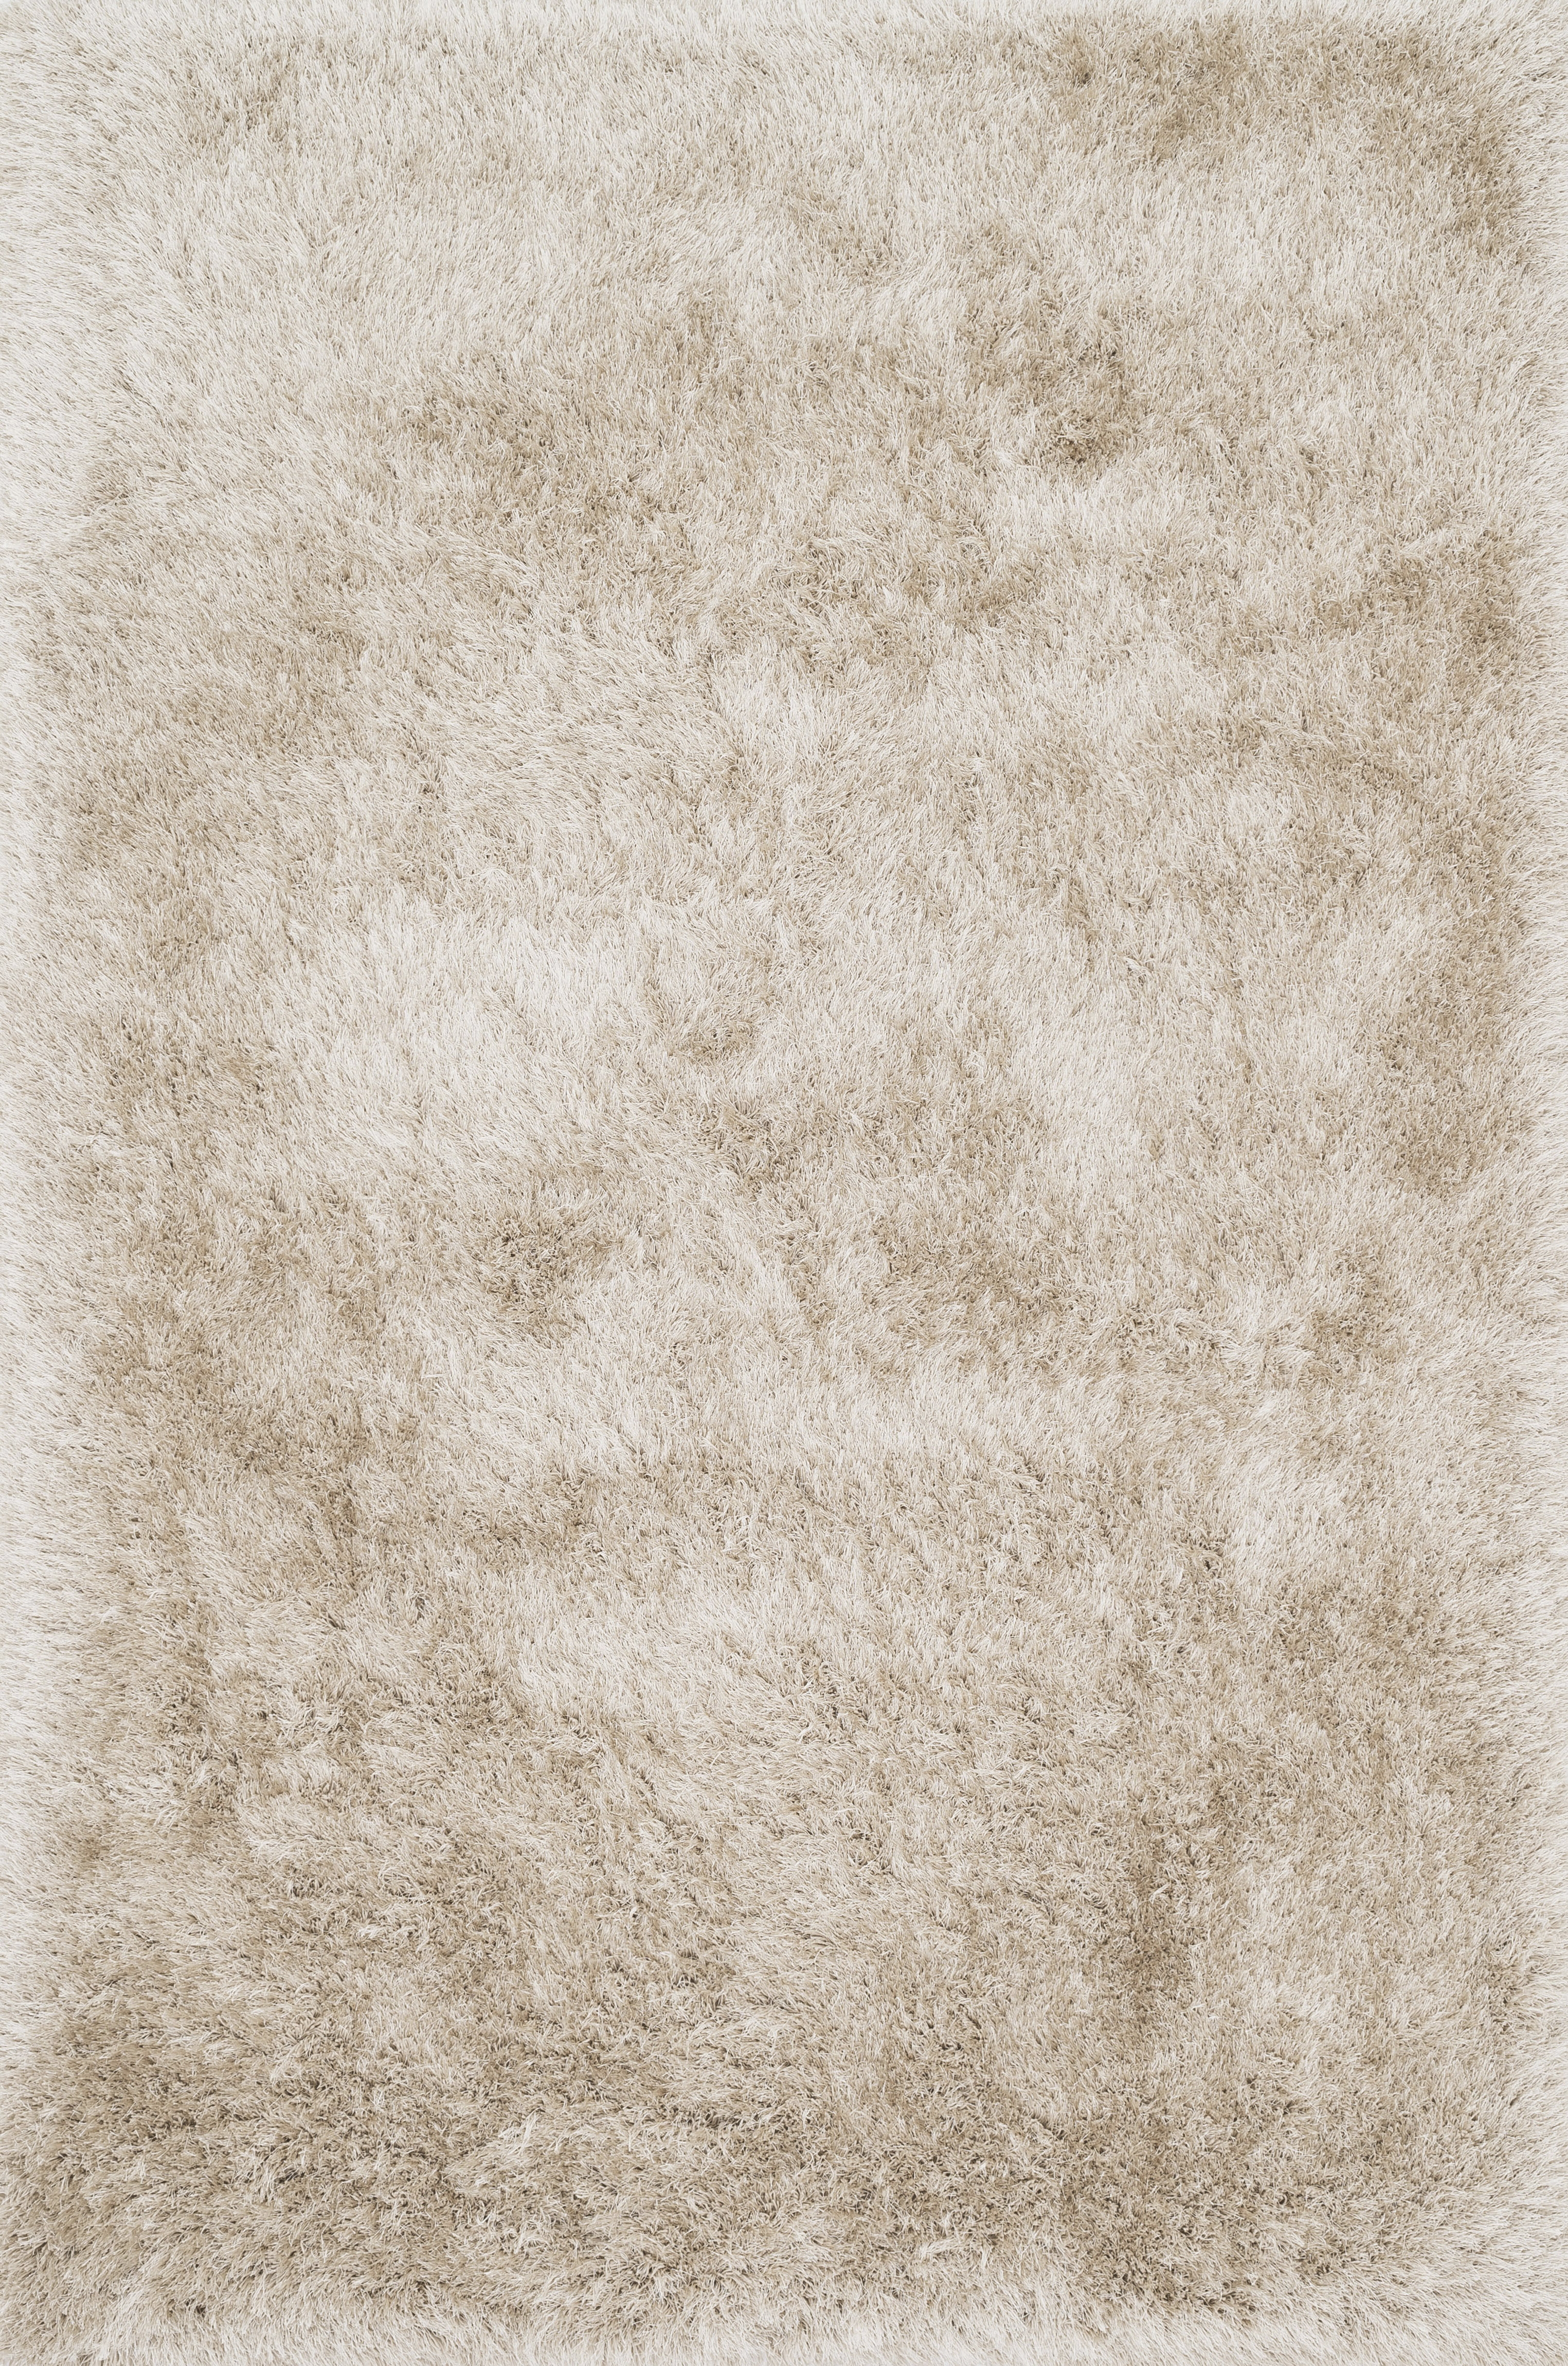 Loloi Orian Shag OR-01 Beige 2'-3" x 3'-9" - Image 0